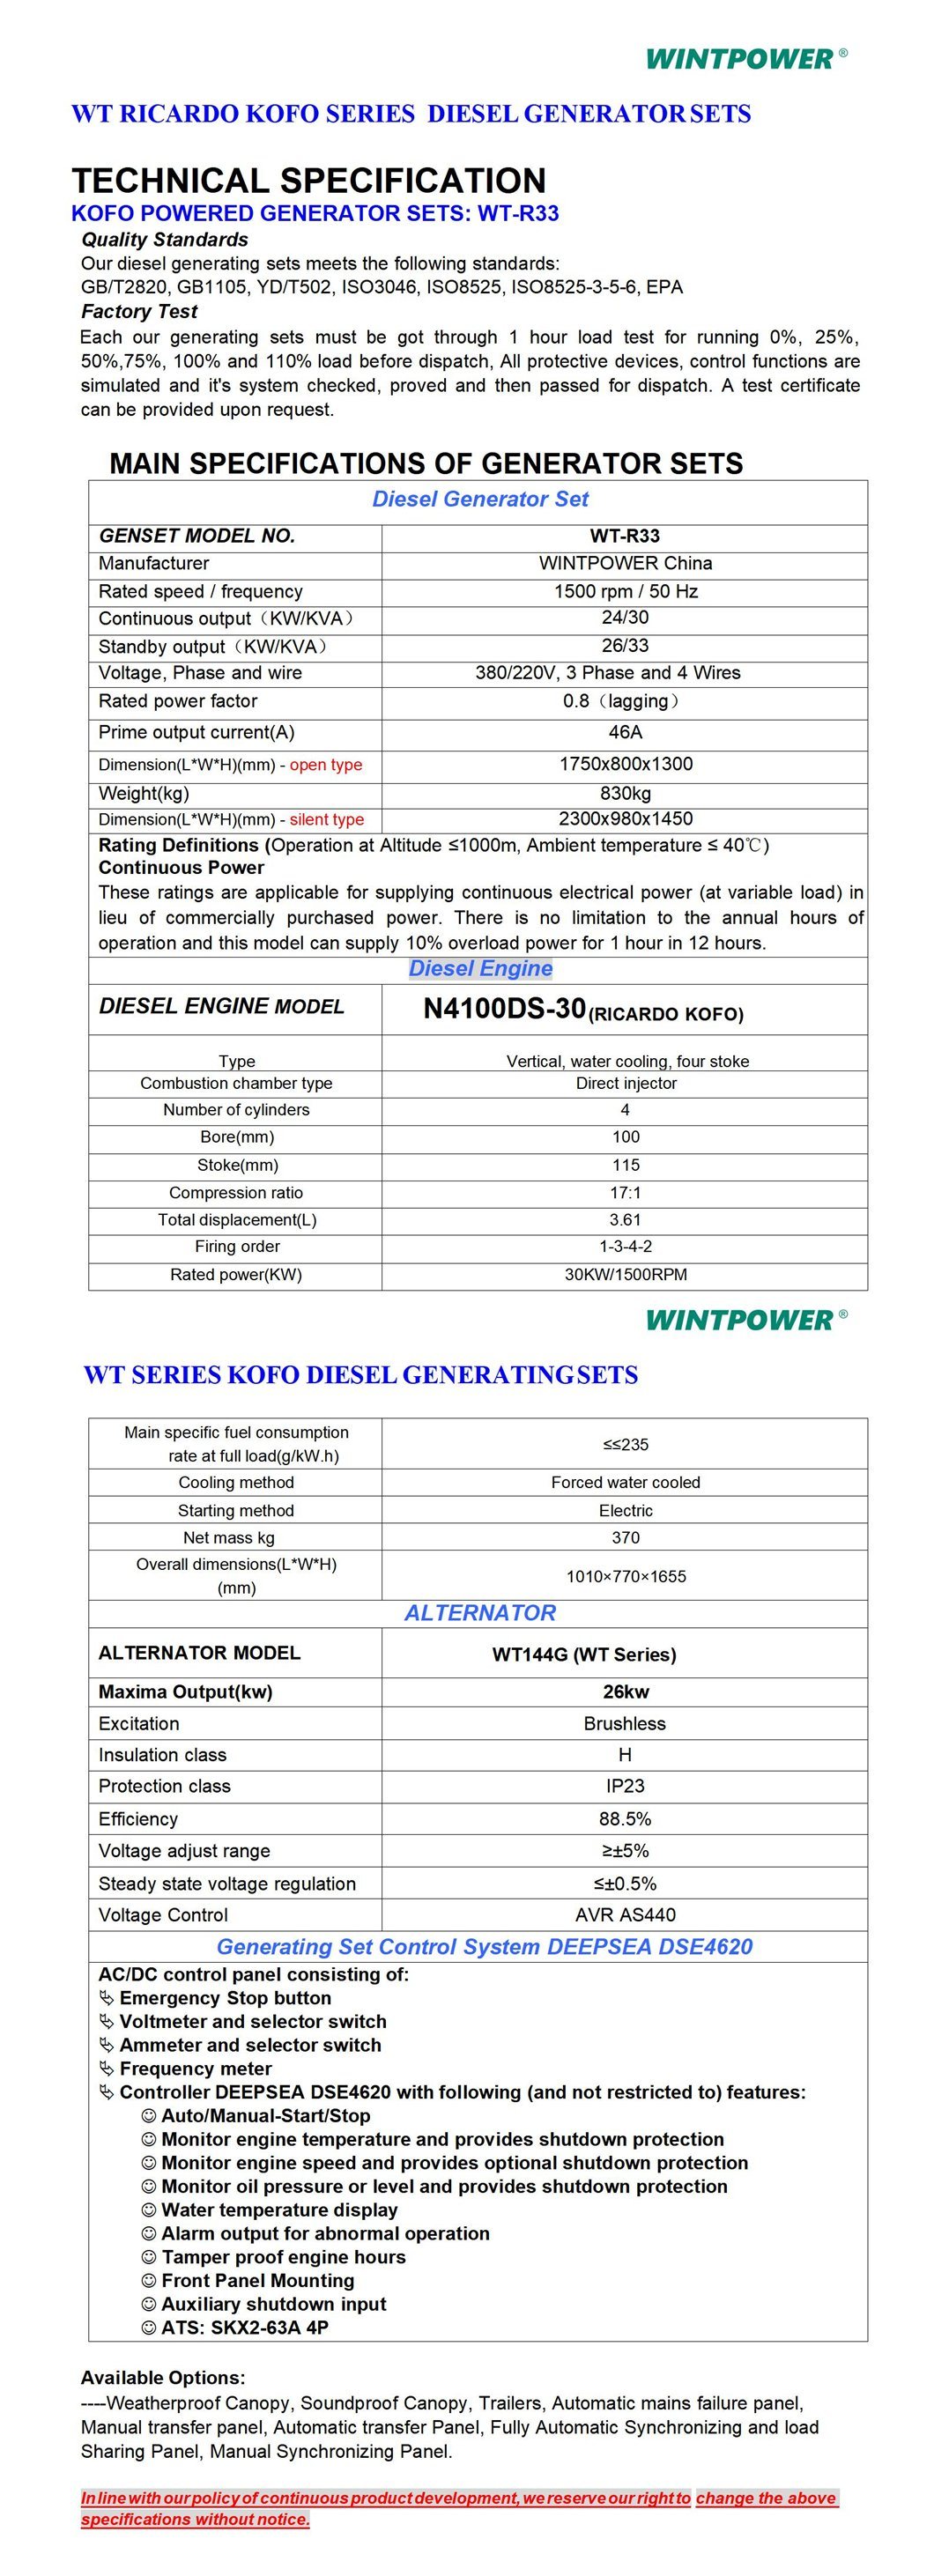 Weichai Kofo Ricardo Diesel Engine Power Generator Set Dg Genset 40kVA N4105ds-38 Zvočno izoliran tih tip 400/230V 380/220V 208/110V 440V 480V 600V 50Hz 60Hz